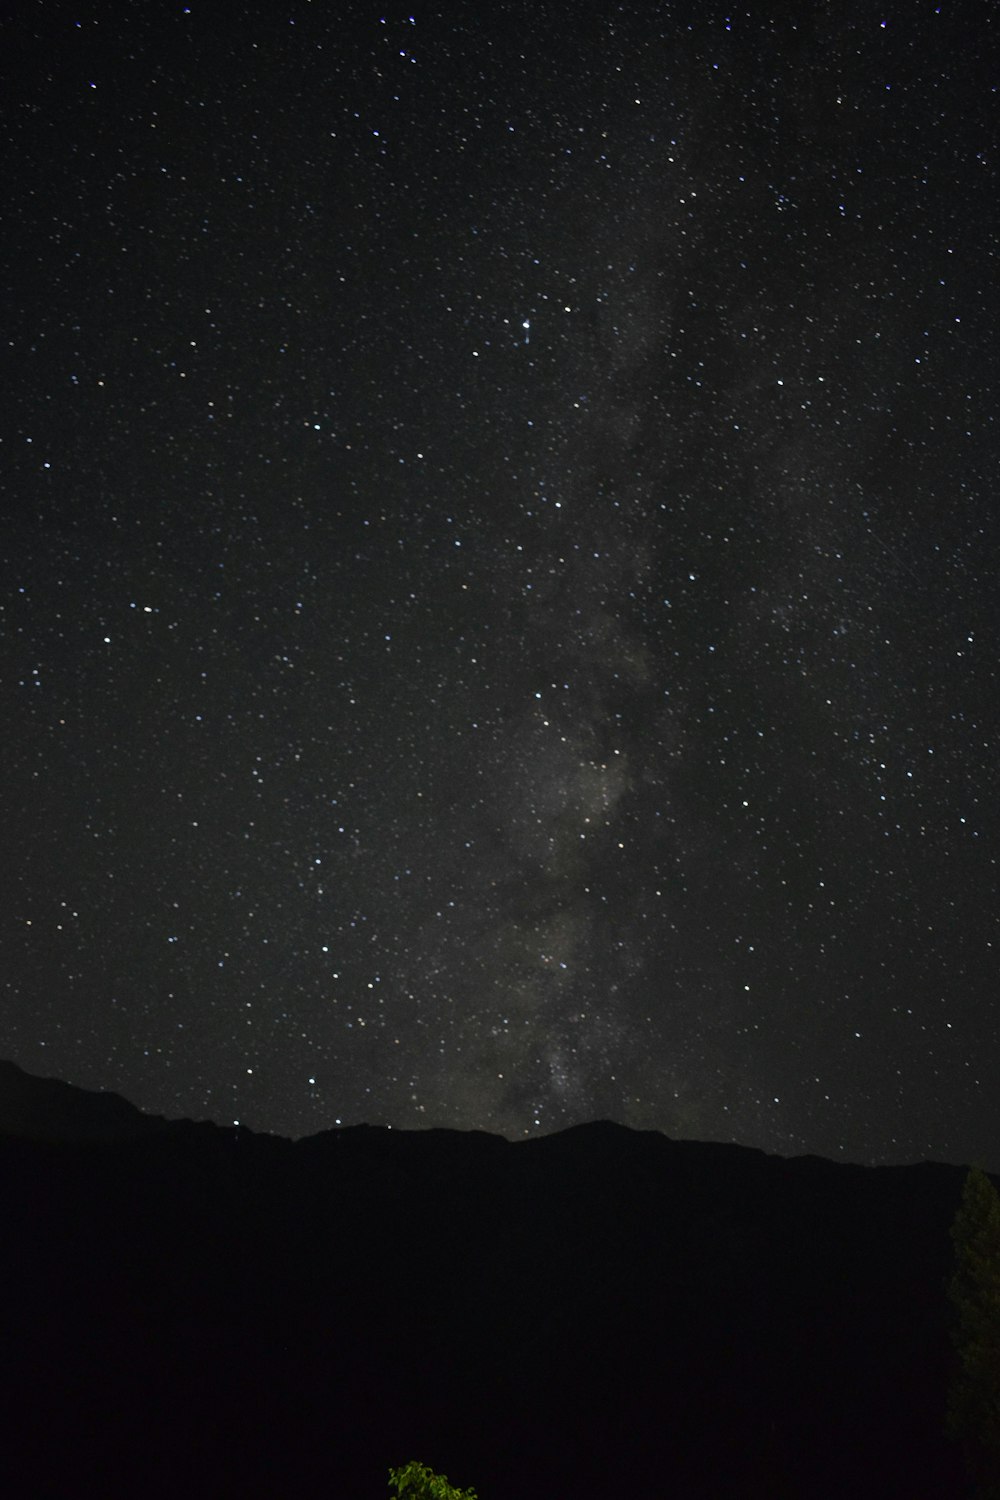 Le ciel nocturne avec des étoiles et un arbre au premier plan